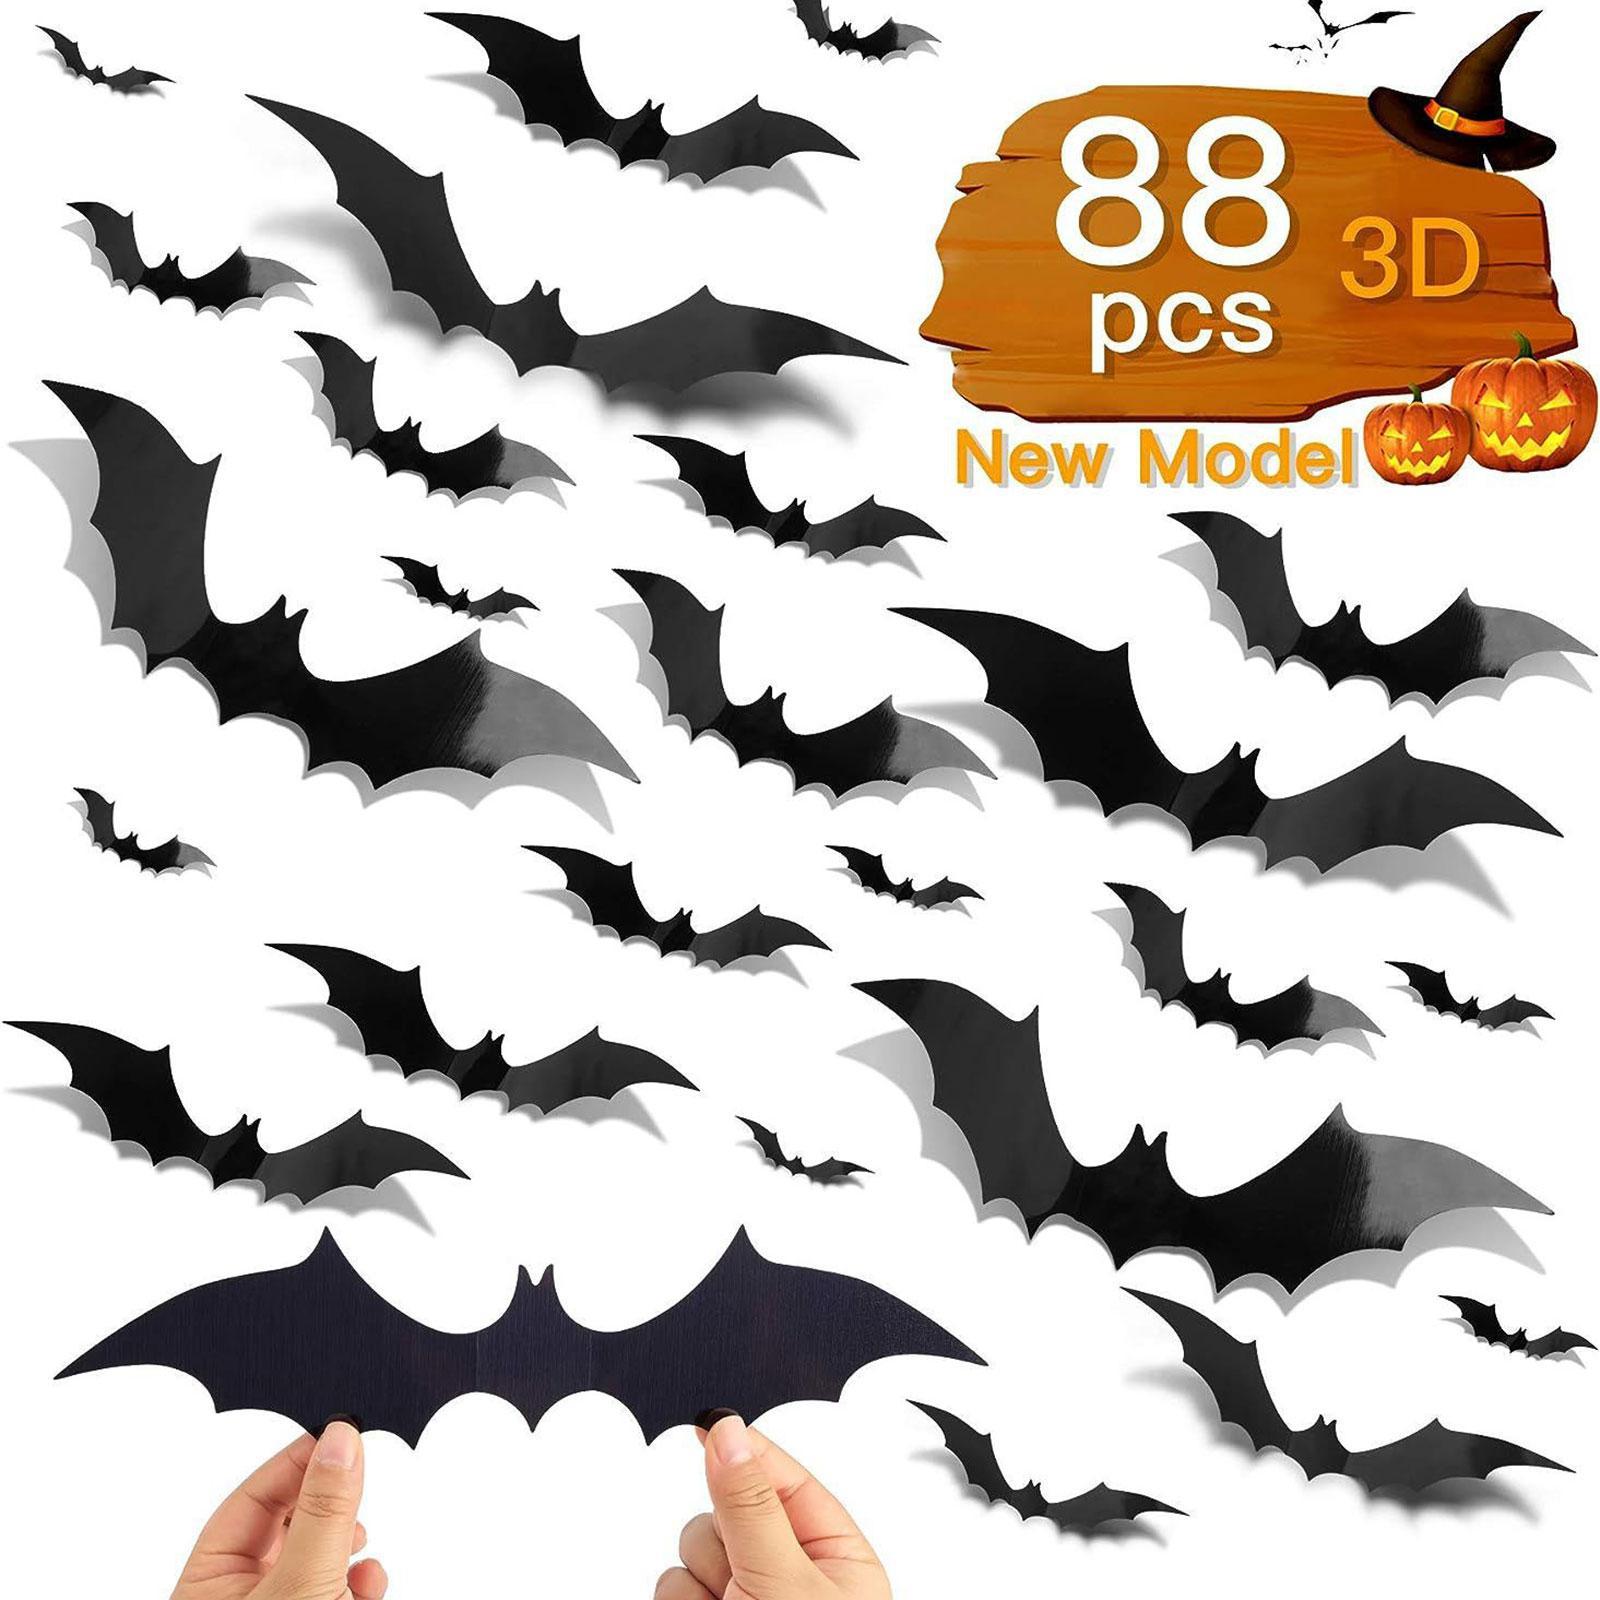 88Pcs Bats Wall Decor Creepy Black Spooky Bats 3D Bats Halloween Decorations